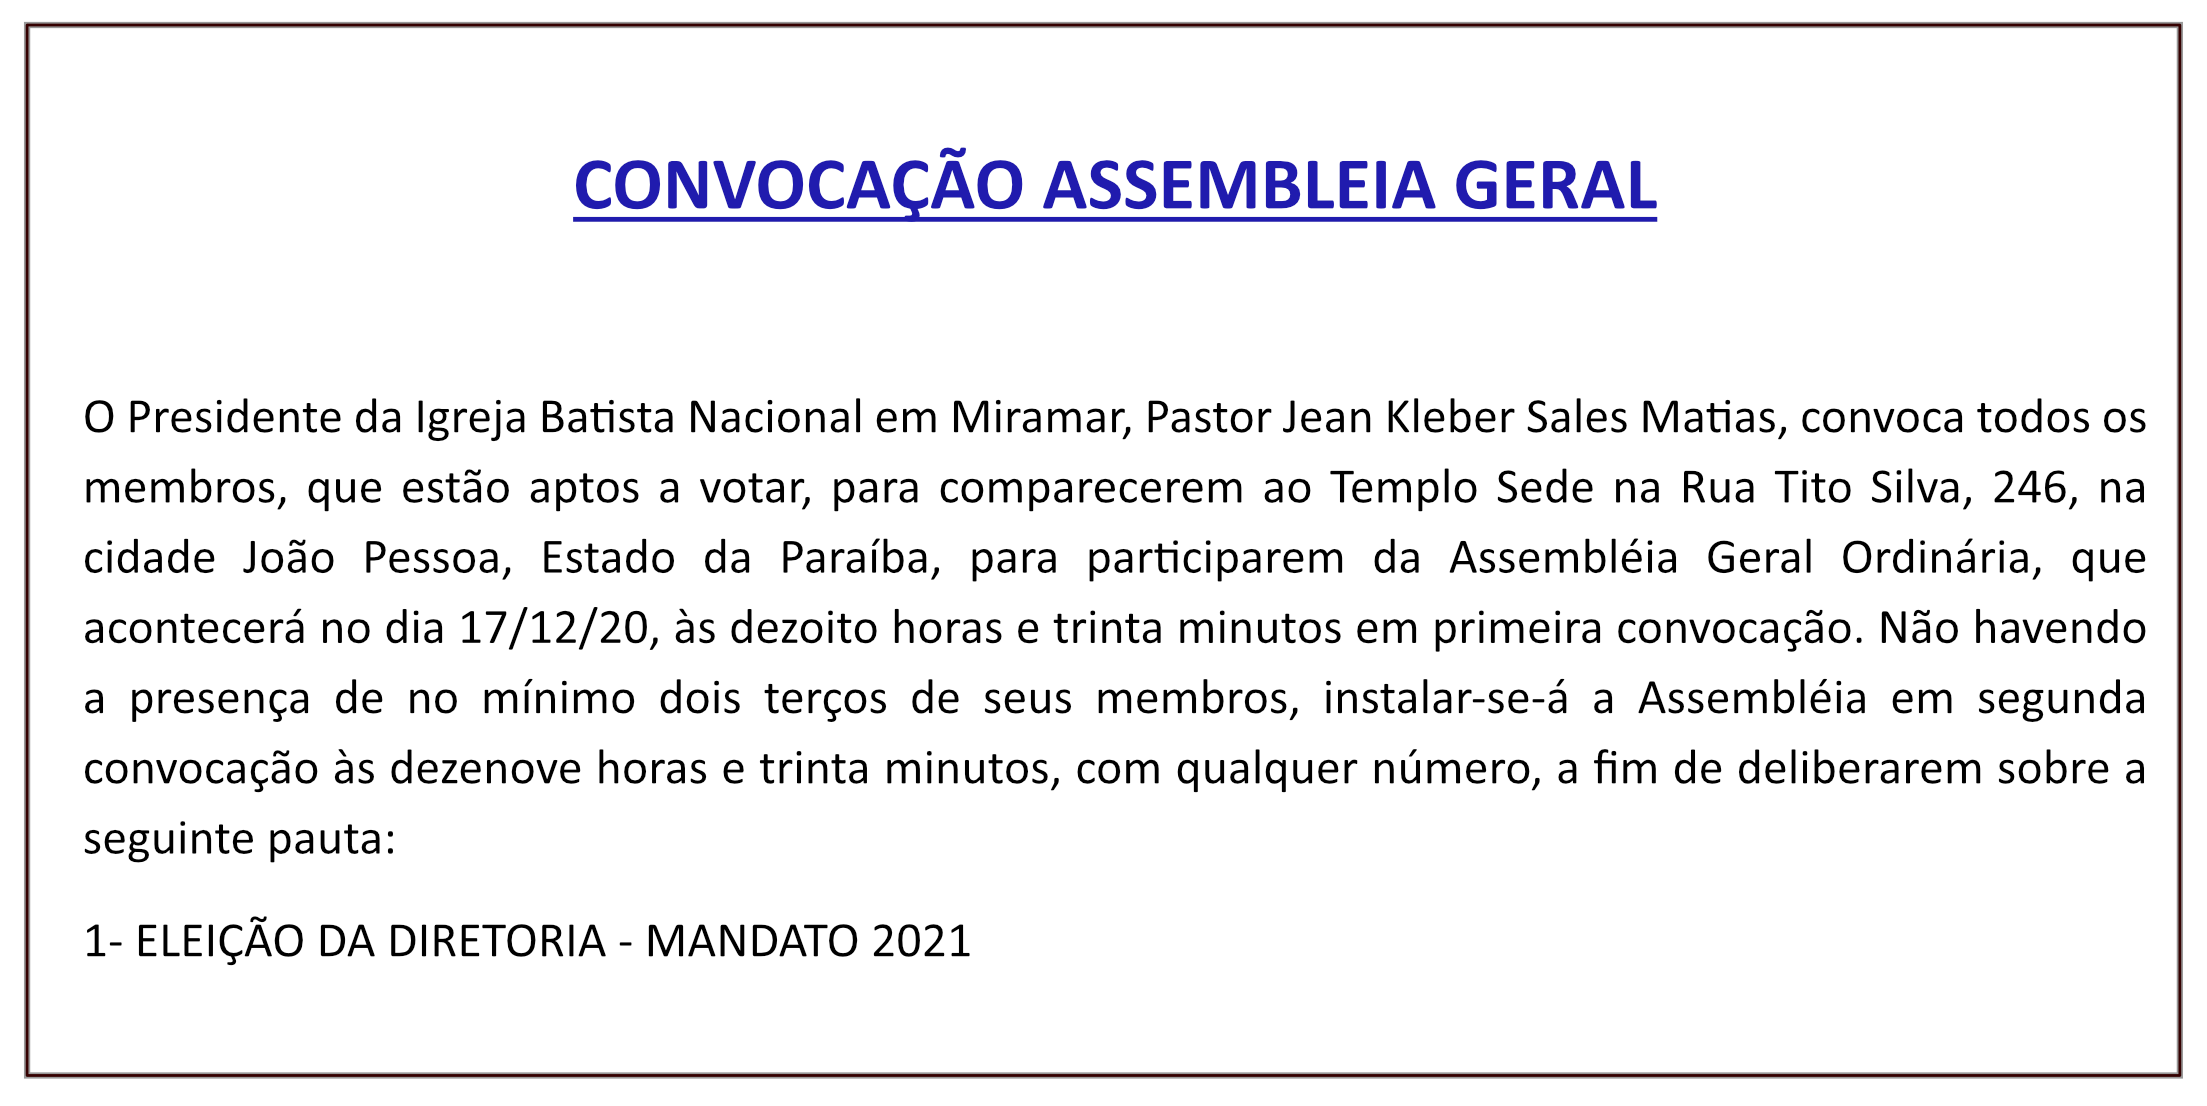 Igreja Batista Nacional em Miramar – Convocação Assembleia Geral